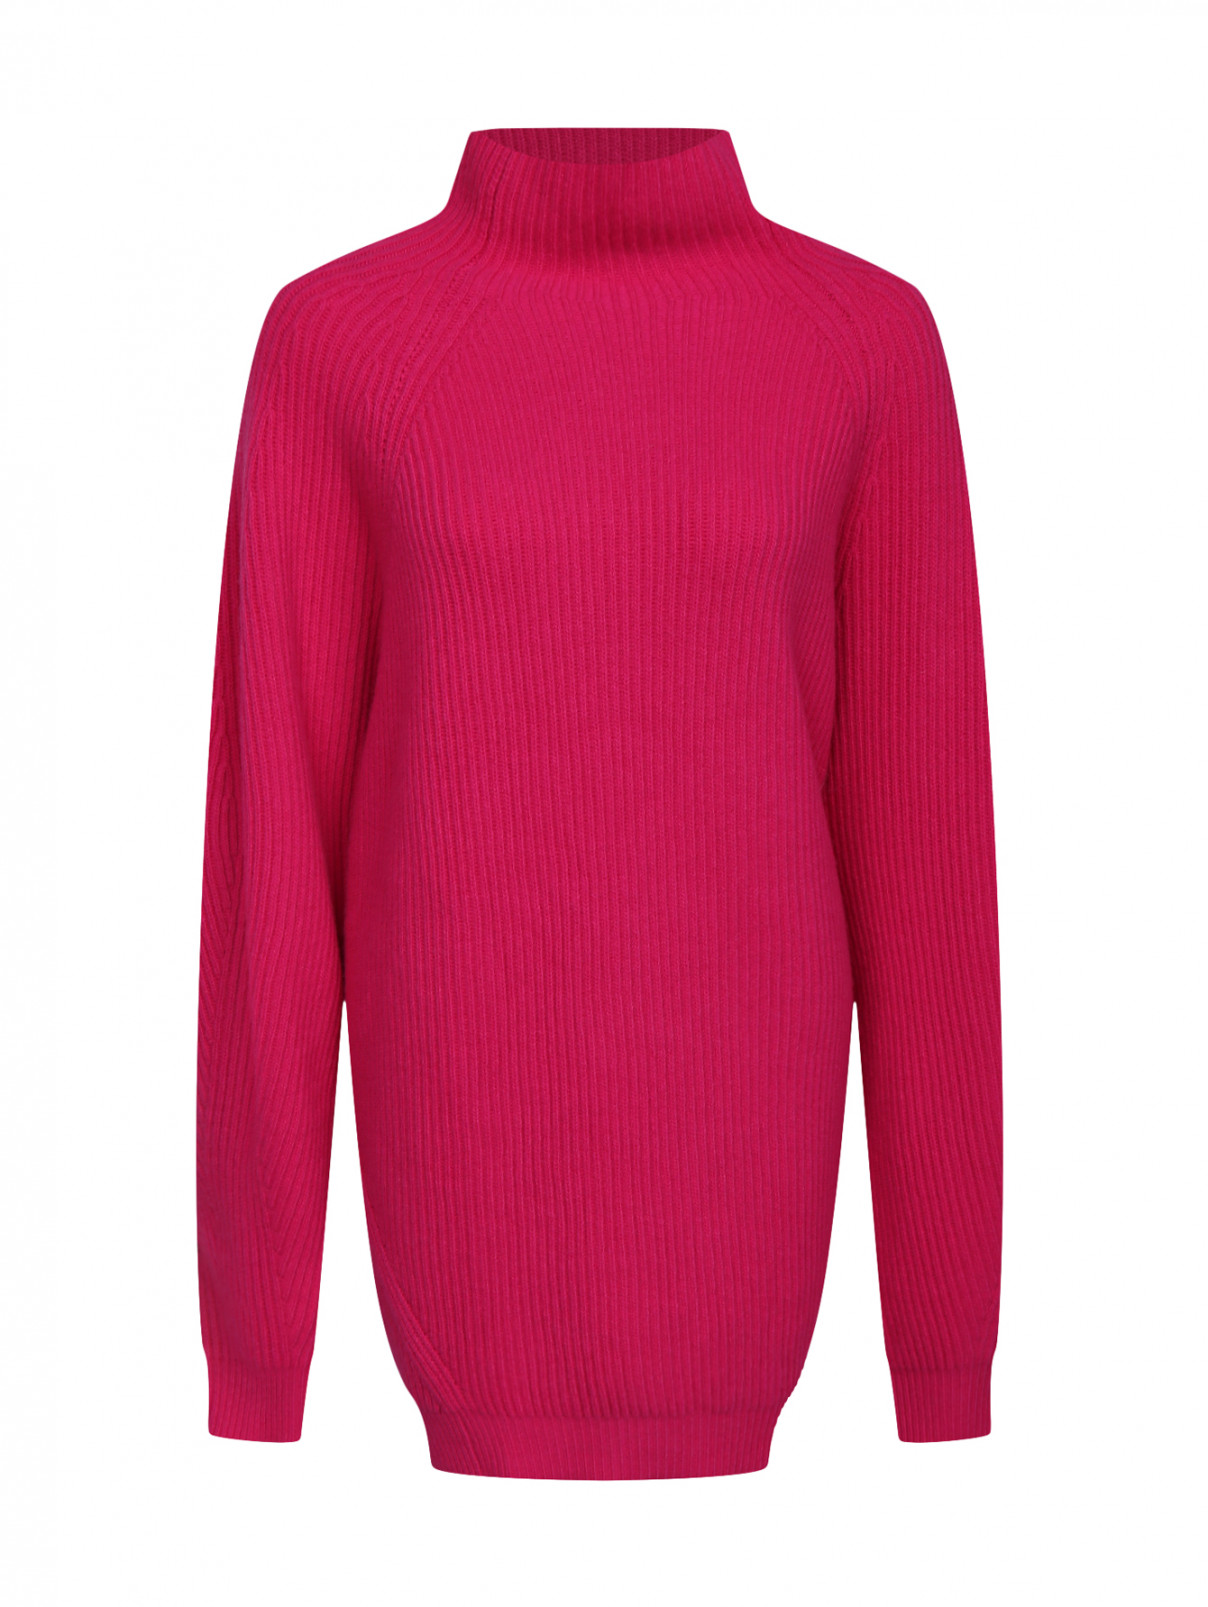 Удлиненный свитер из шерсти и кашемира Erika Cavallini  –  Общий вид  – Цвет:  Розовый